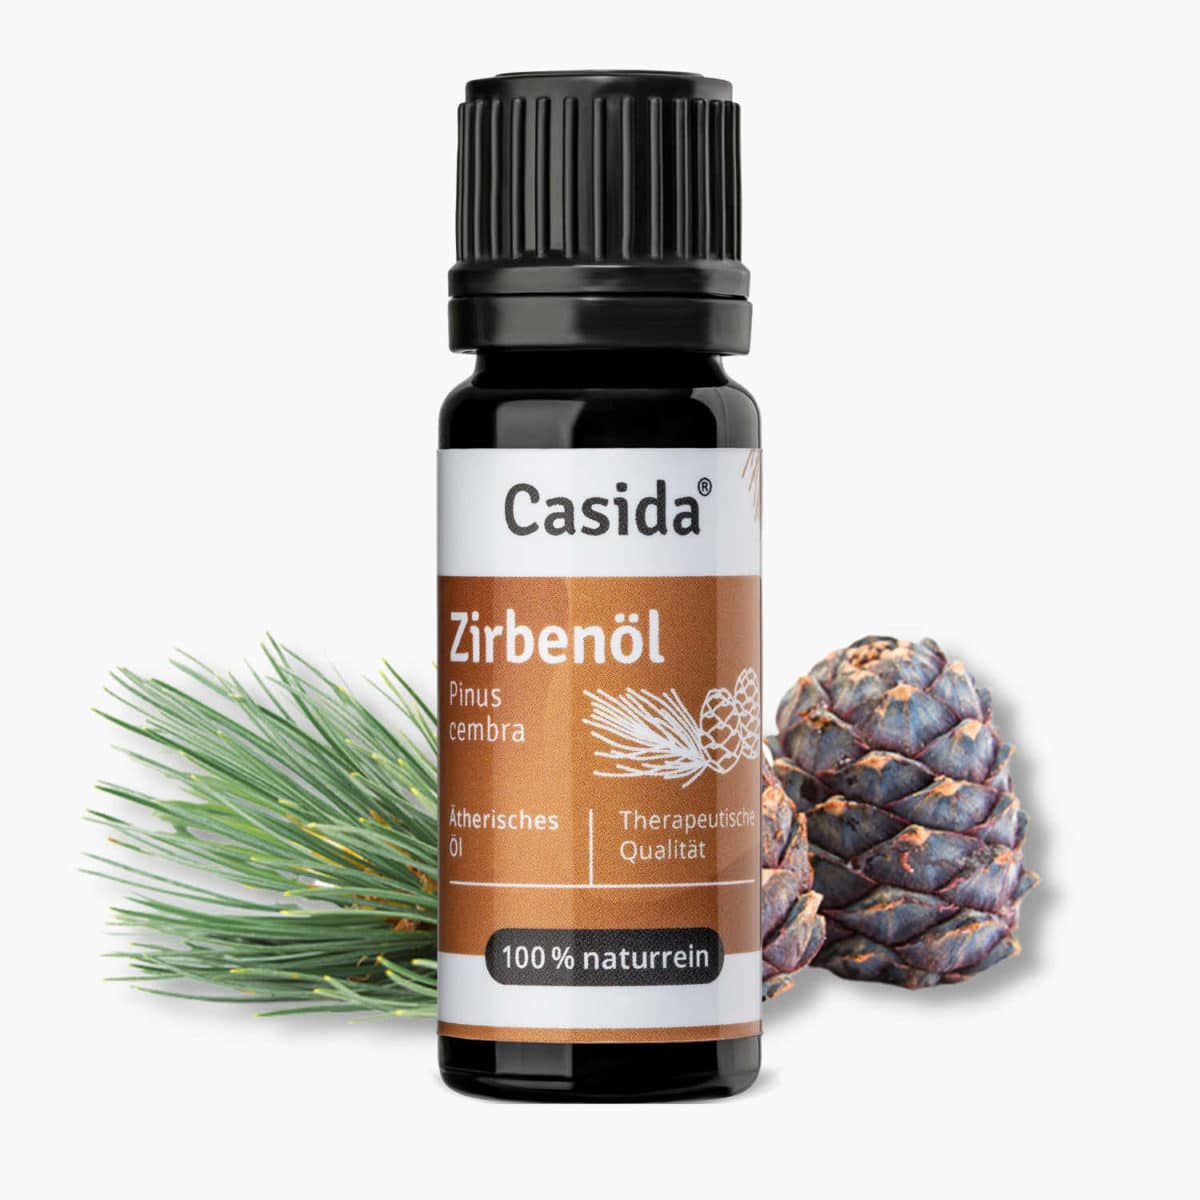 Casida Zirbenöl Pinus cembra naturrein – 10 ml 16486743 PZN Apotheke Zirbelkiefernöl ätherische Öle Diffuser